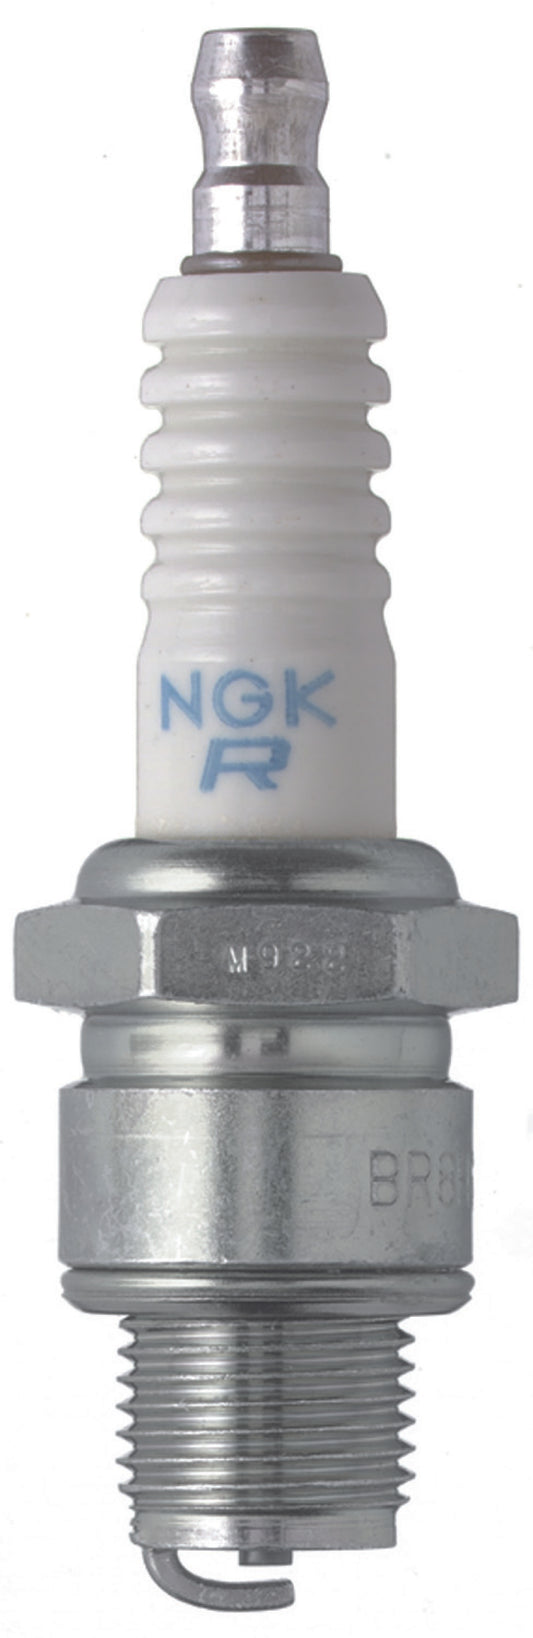 NGK Standard Spark Plug Box of 10 (BR5HS)